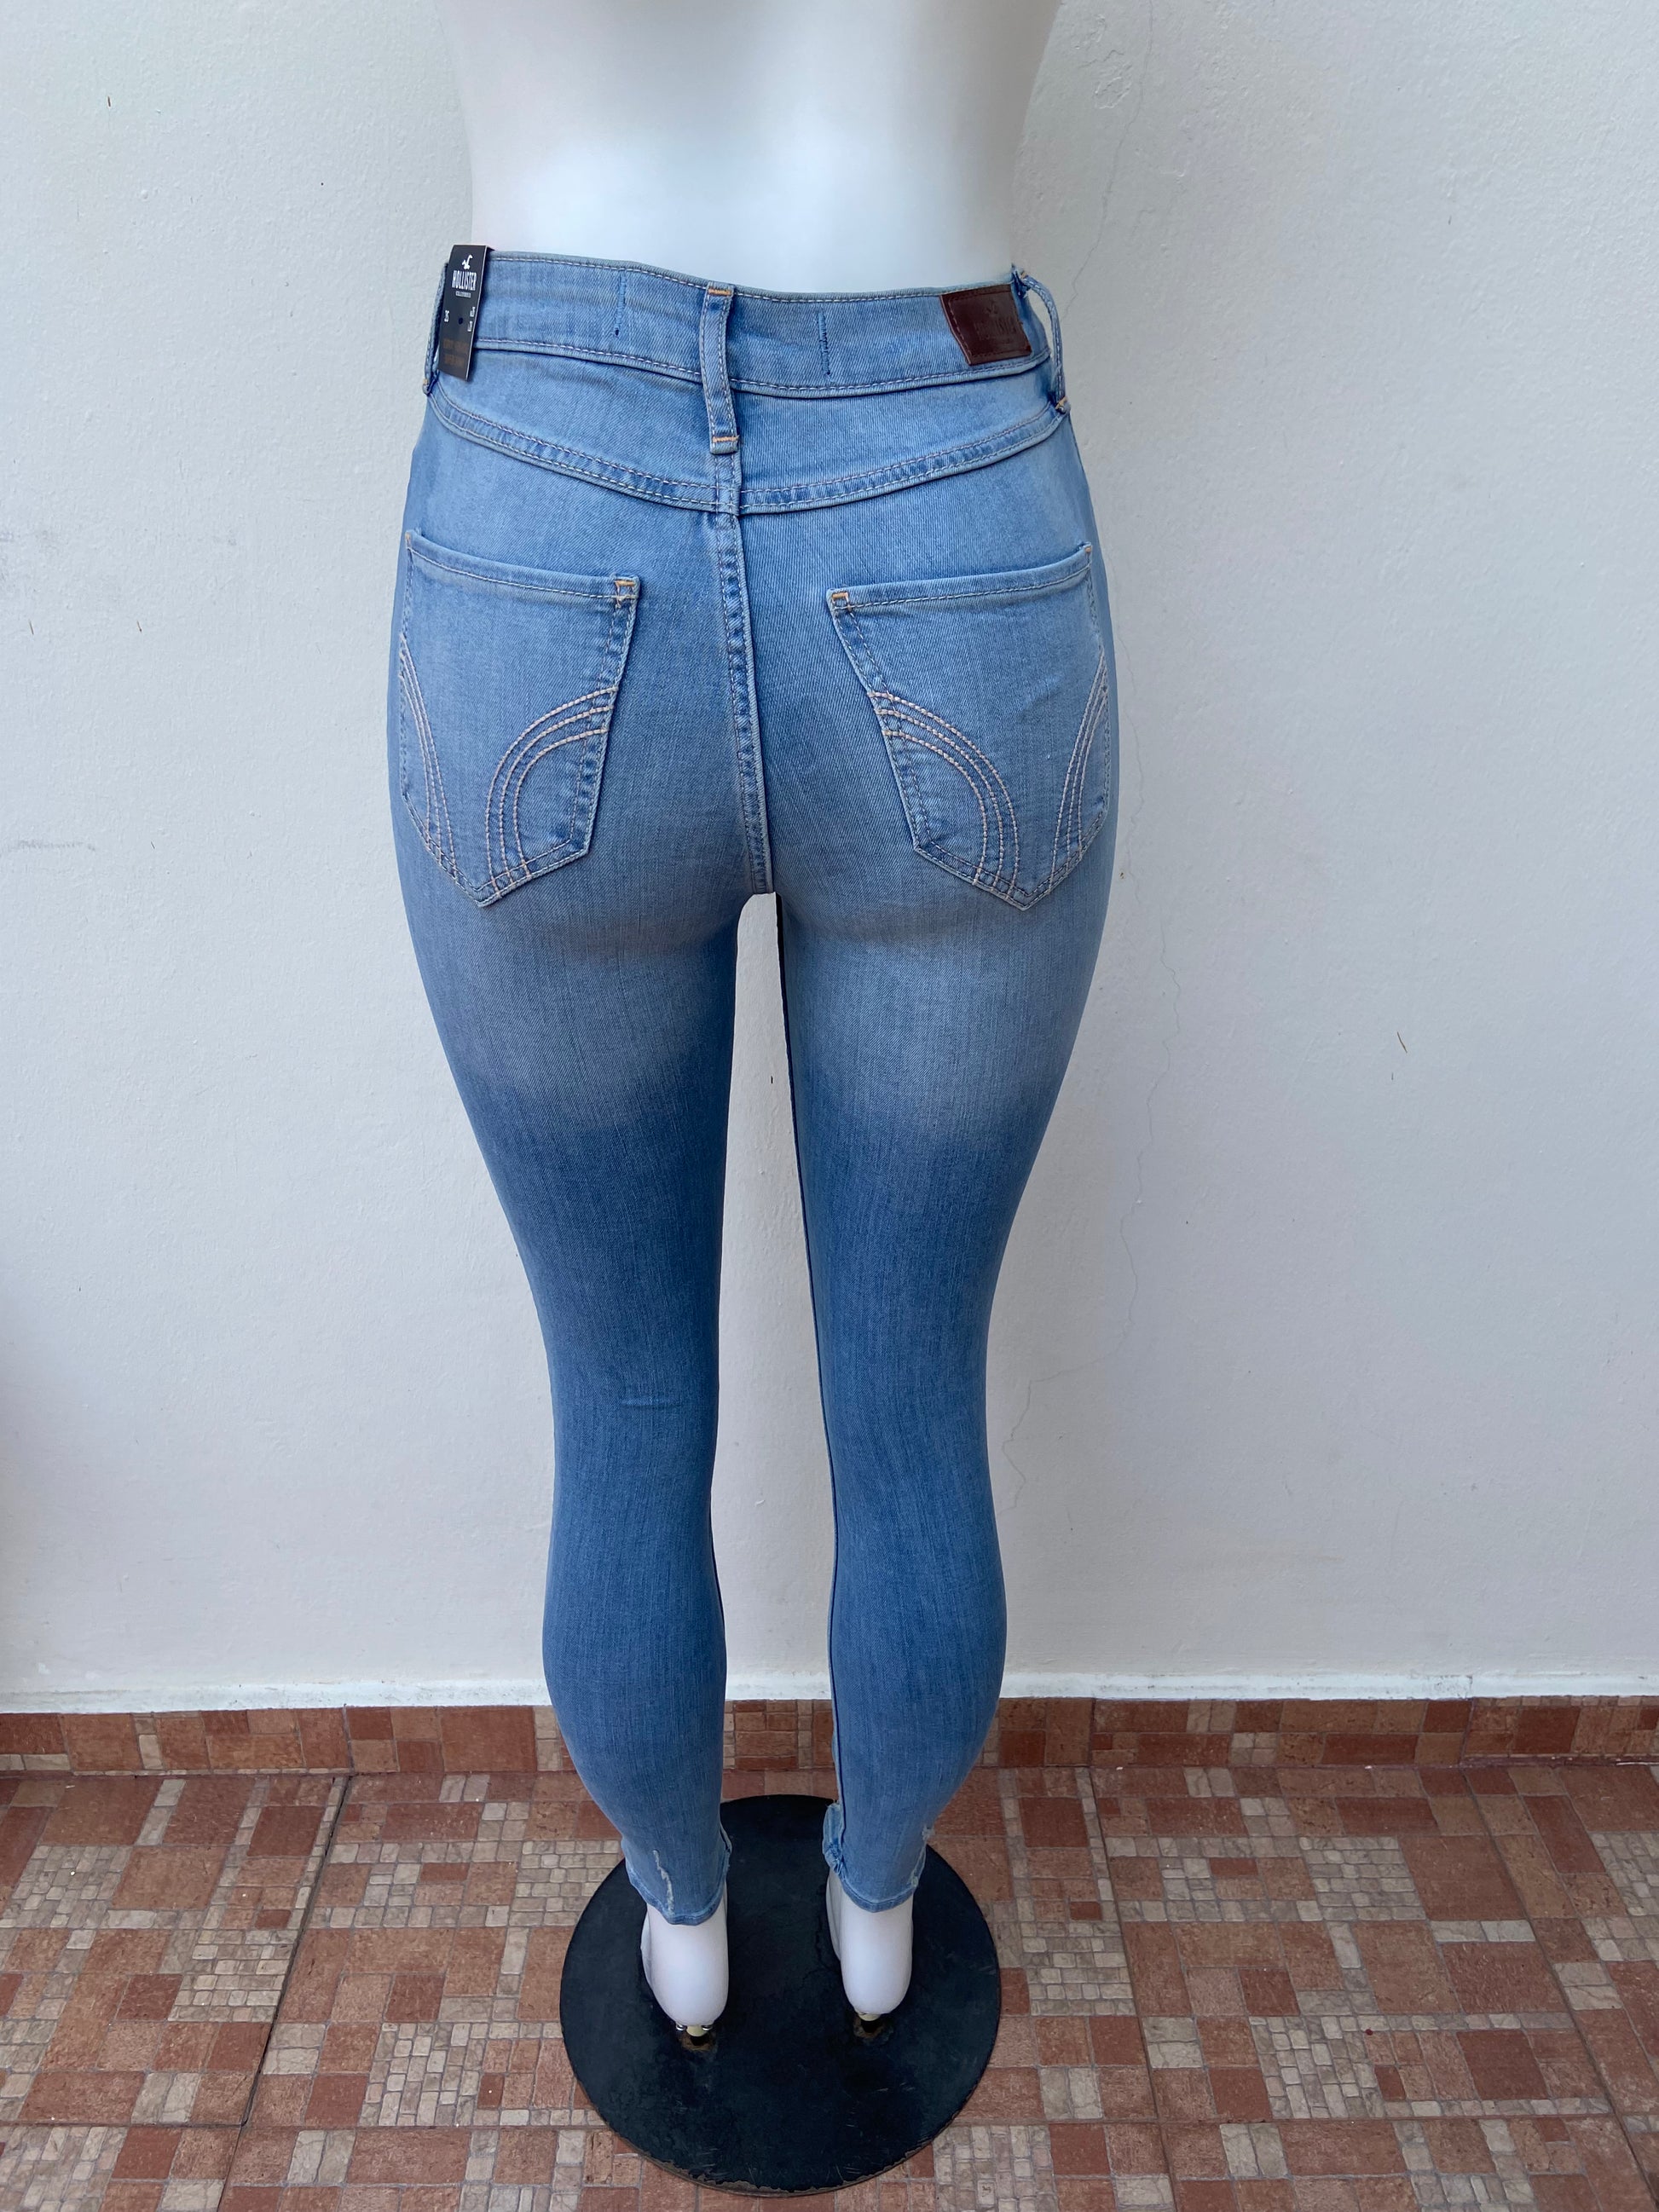 Pantalón Jeans Hollister Original, Azul Claro Con, 58% OFF